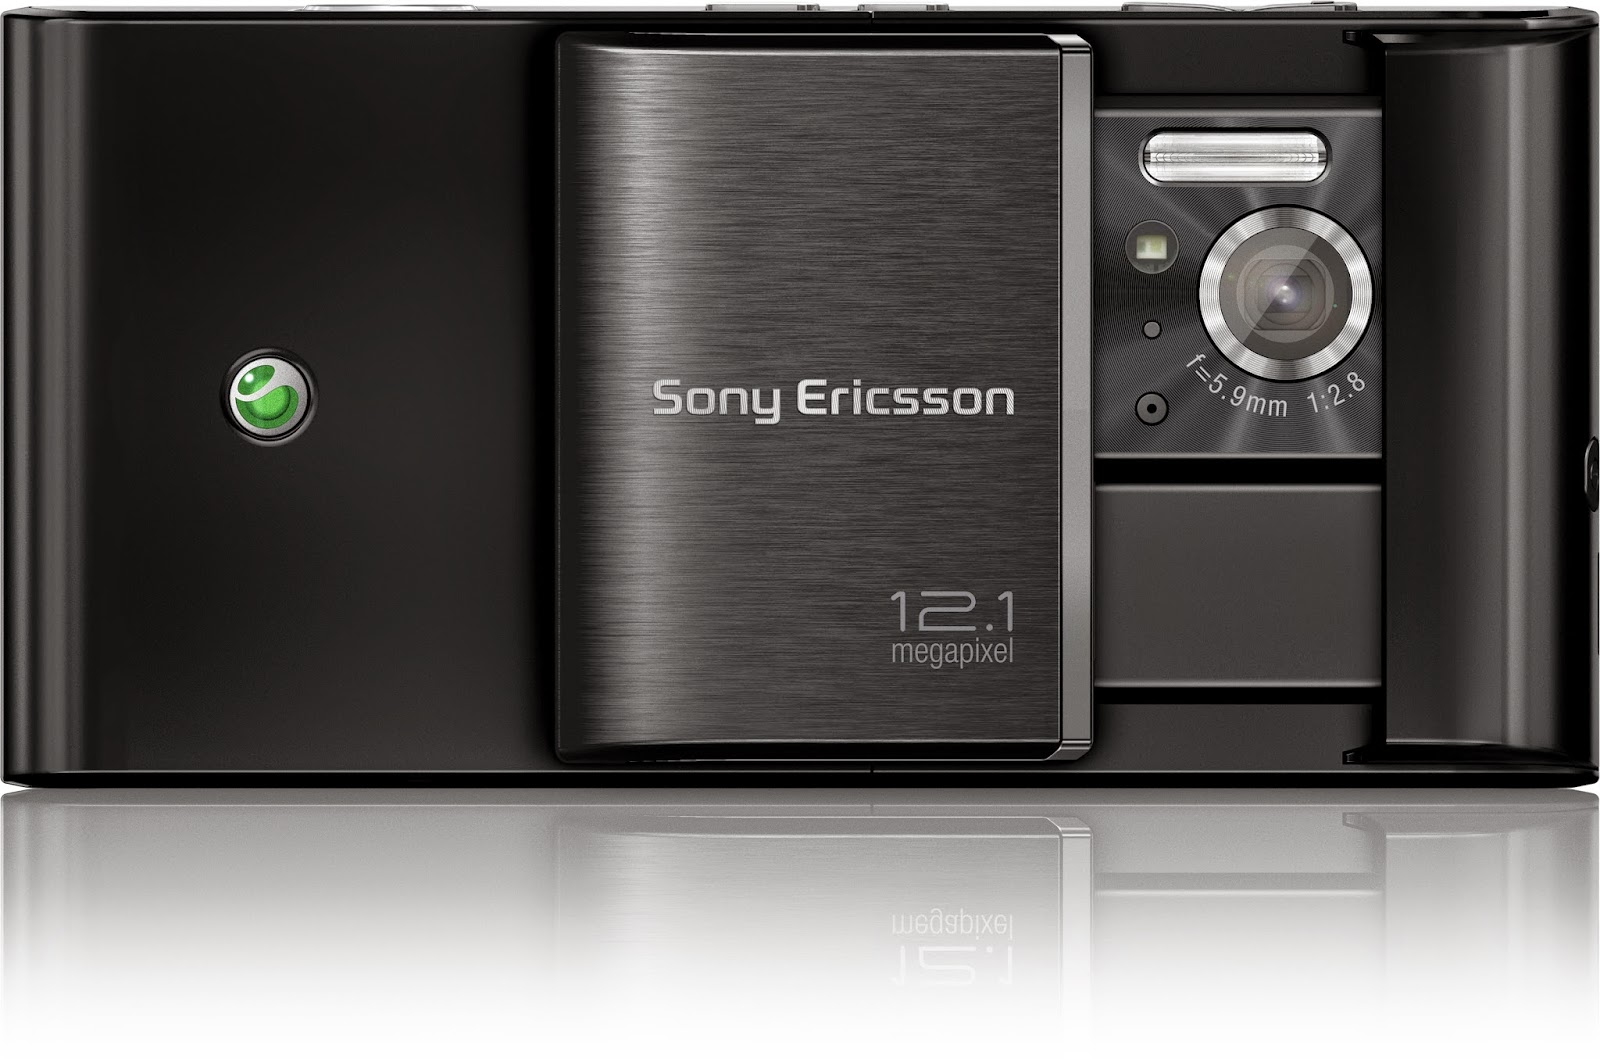 Harga Hp Terbaru Sony Ericsson Februari 2015  Kumpulan 